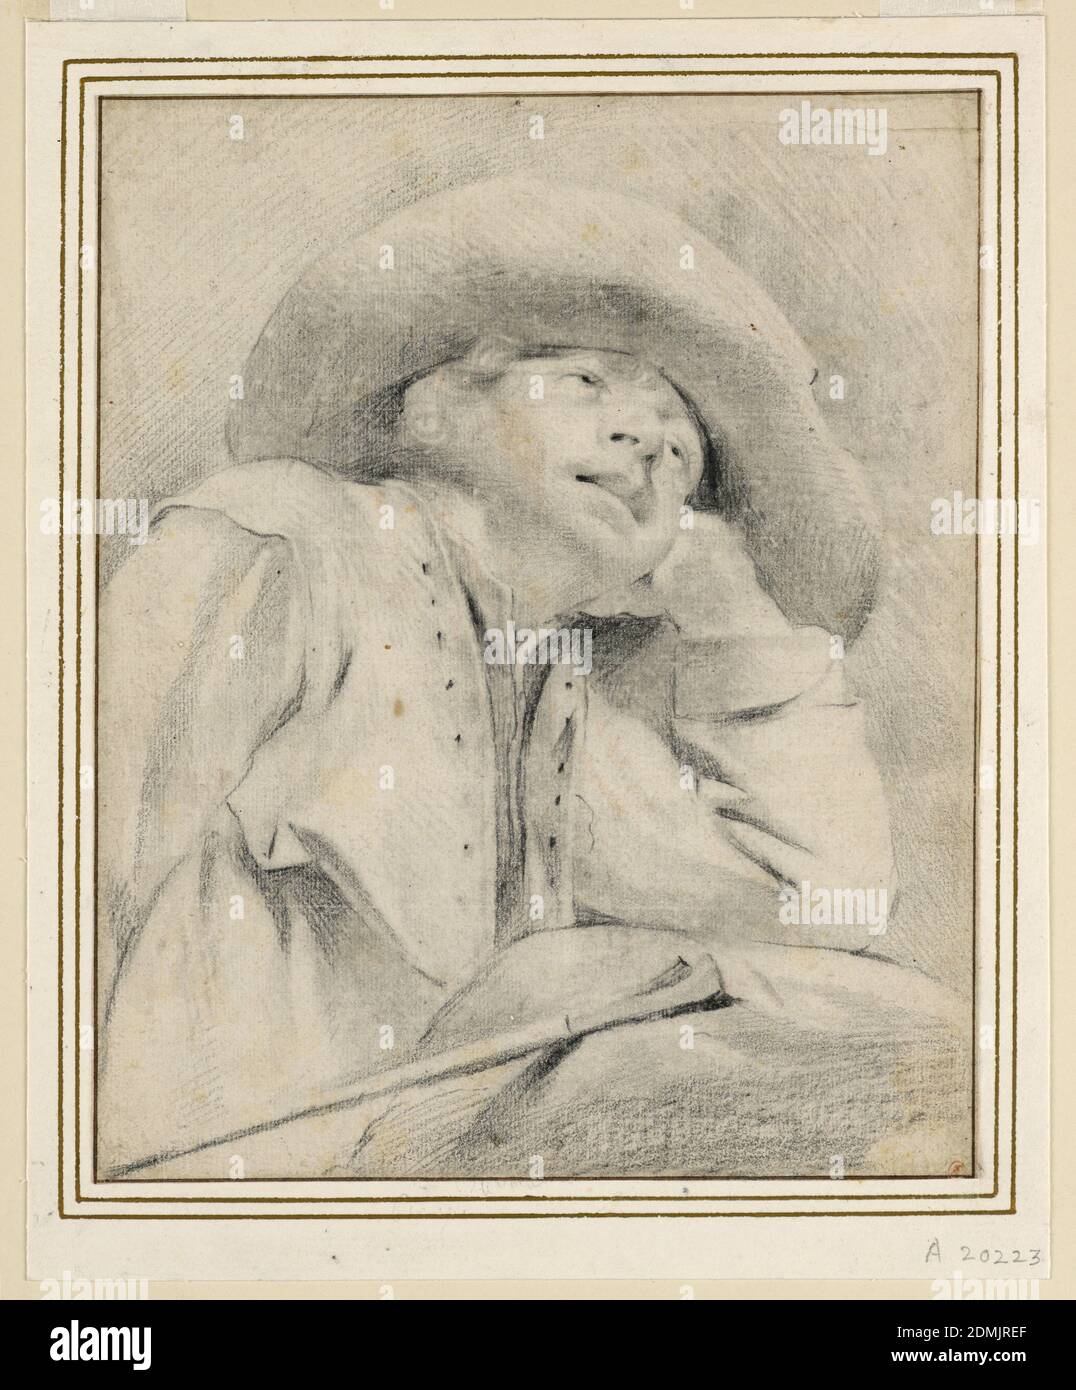 Ein Shepherd Boy, schwarze Kreide auf weißem Papier, EIN Junge, der einen breitkrempigen Hut trägt, ist halblang dargestellt, halb rechts gedreht. Er stützt seinen Ellbogen auf einen Felsen, den Kopf lehnt er an seine linke Hand und blickt nach oben. Neben ihm ist sein Stab., Niederlande, ca. 1650, Figuren, Zeichnung Stockfoto